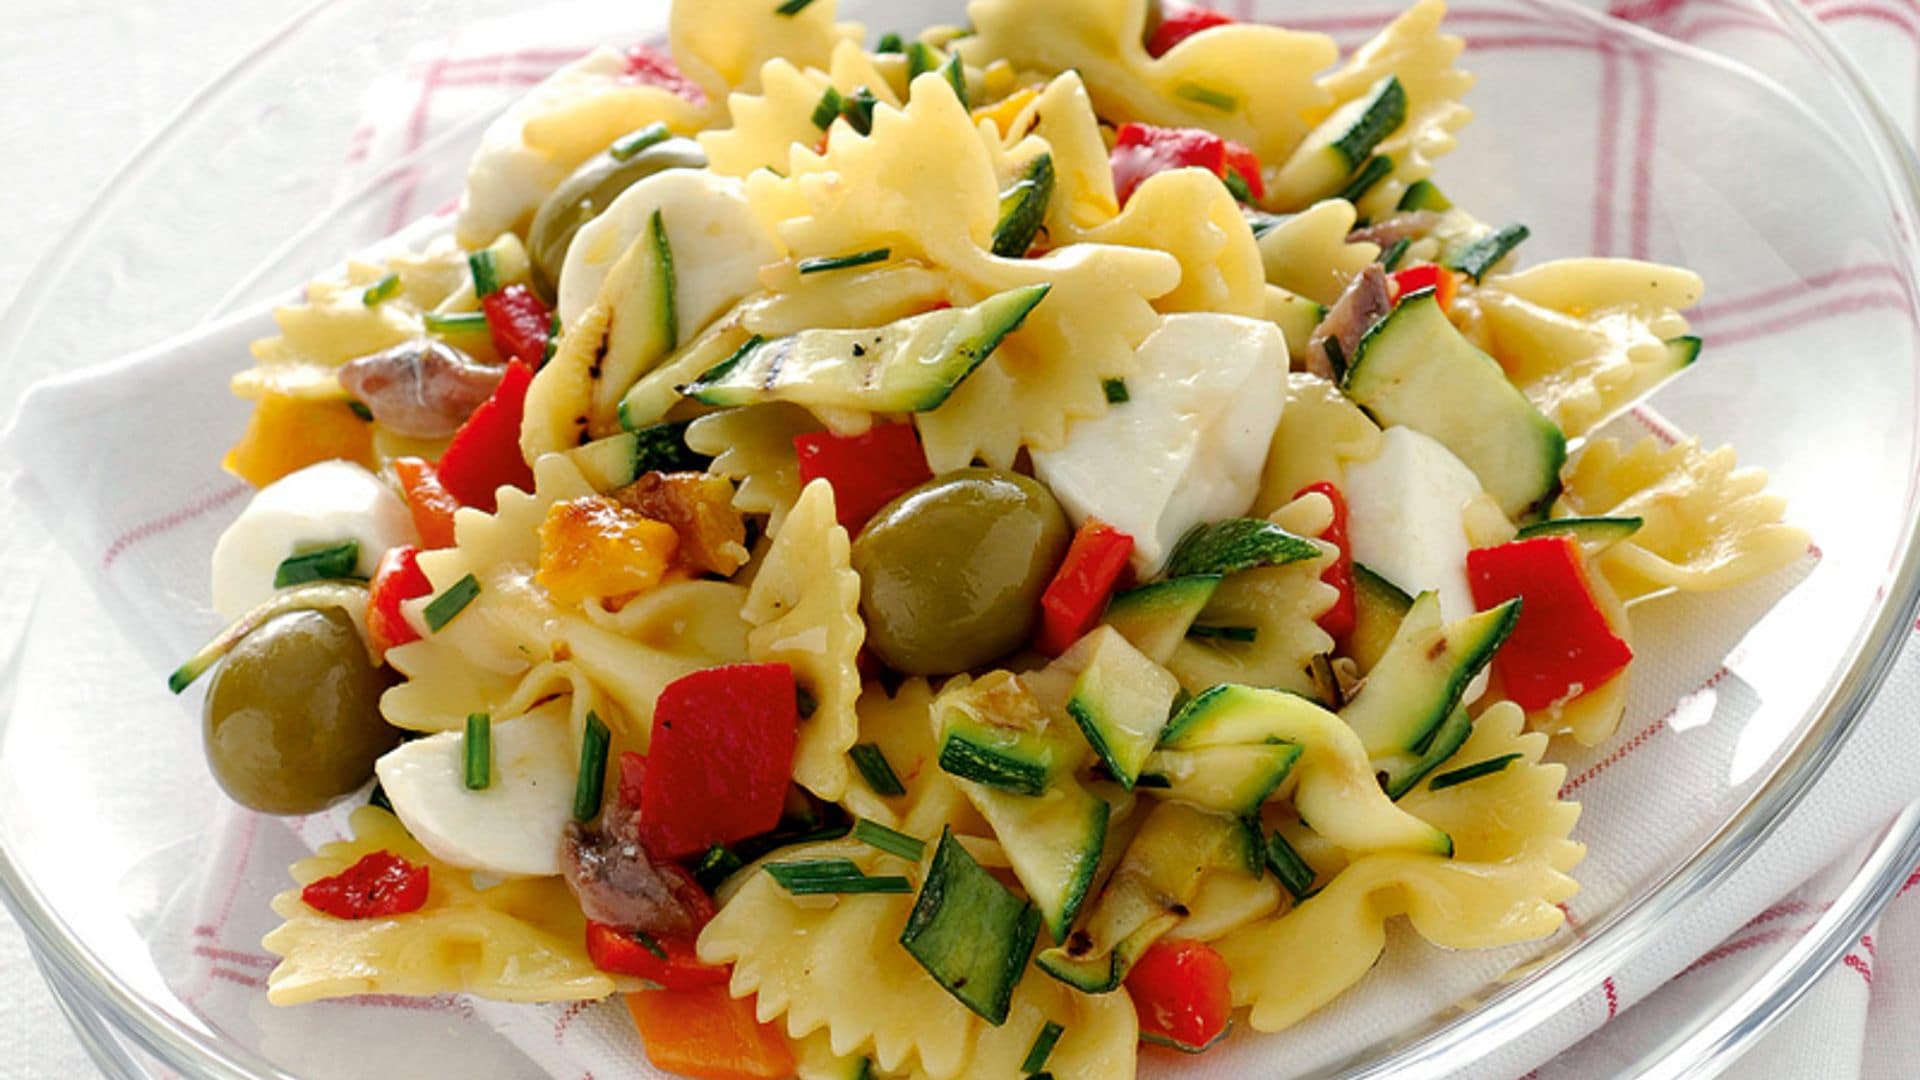 Ensalada de pasta templada con verduras y mozzarella